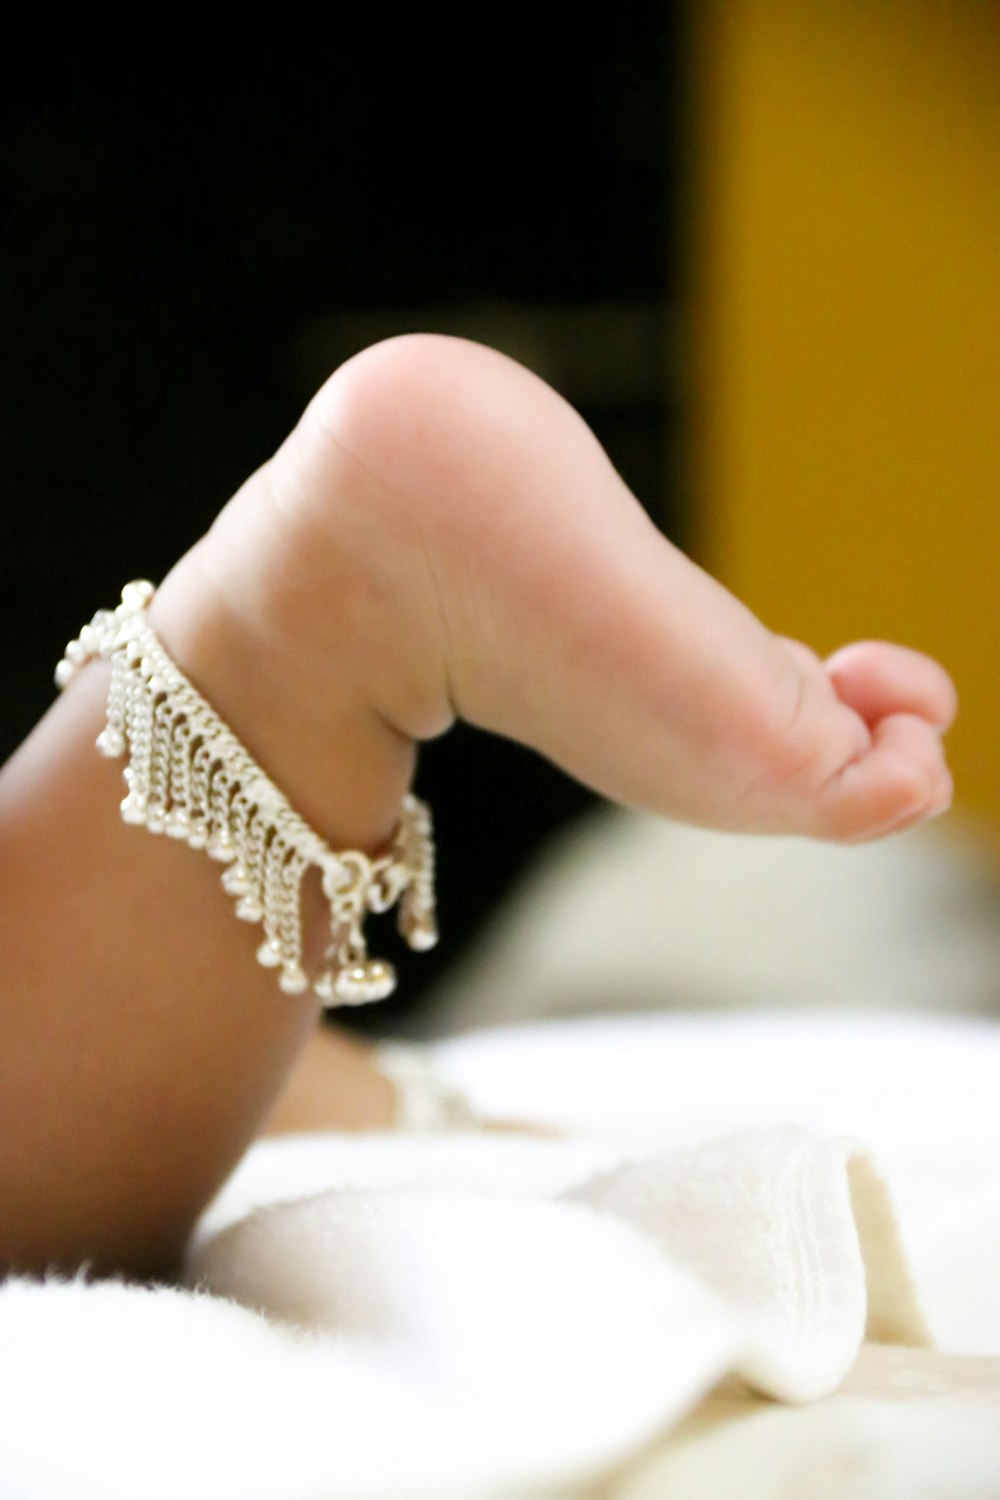 pieds de bébé sur textile blanc